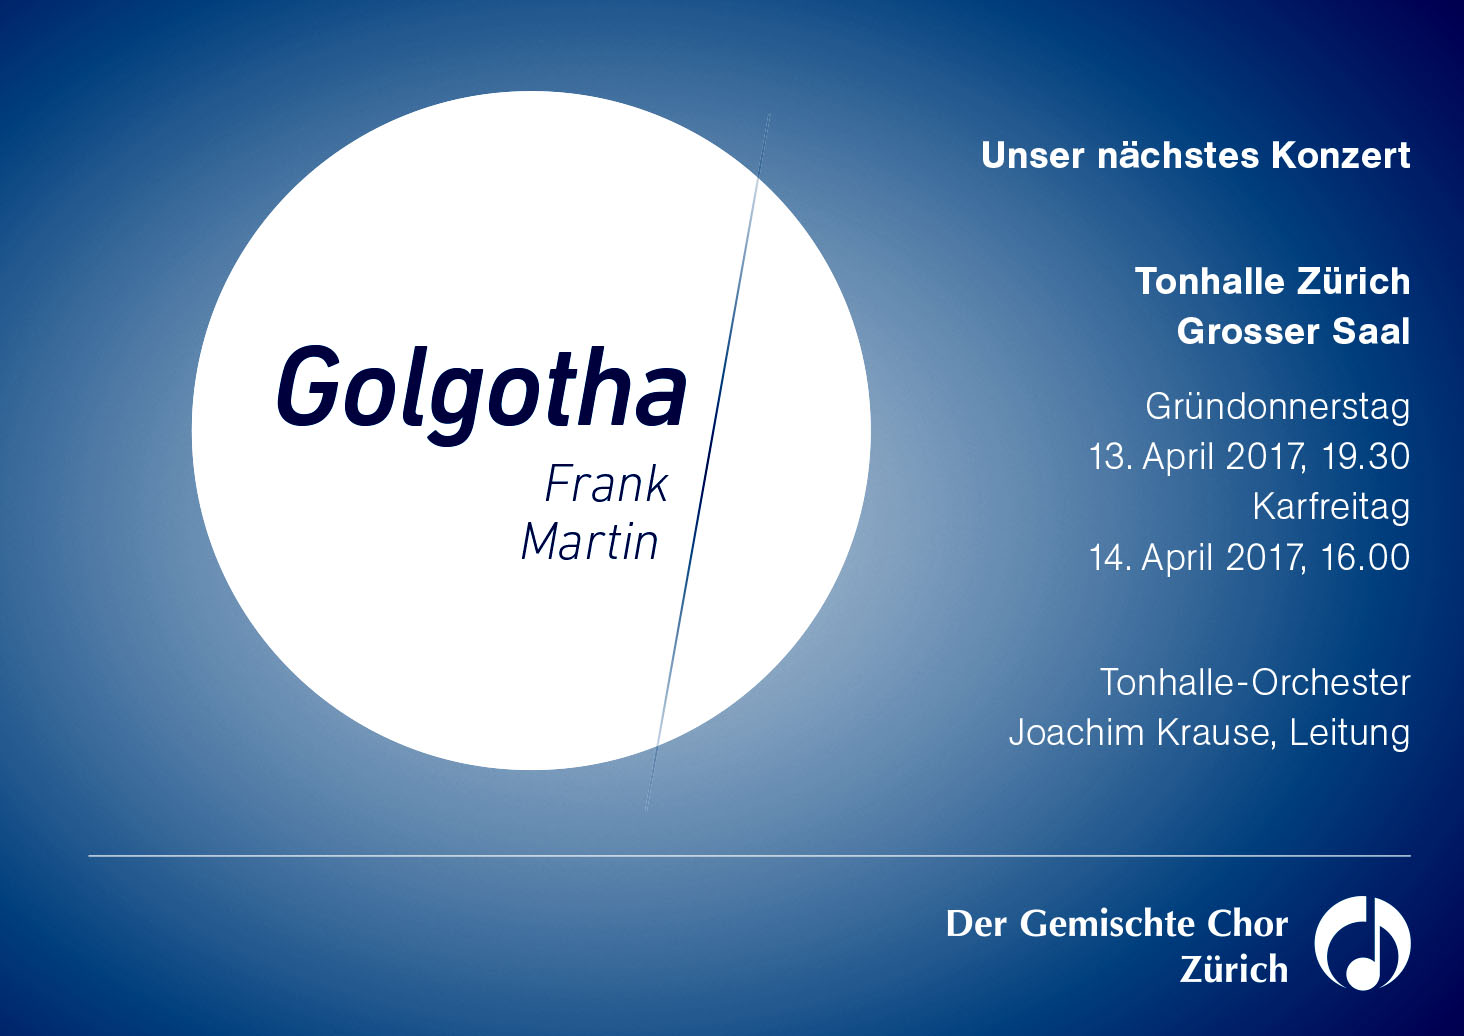 Frank Martin: Golgotha, Ostern 2017, Konzert des gemischten Chors Zürich mit dem Tonhalle-Orchester